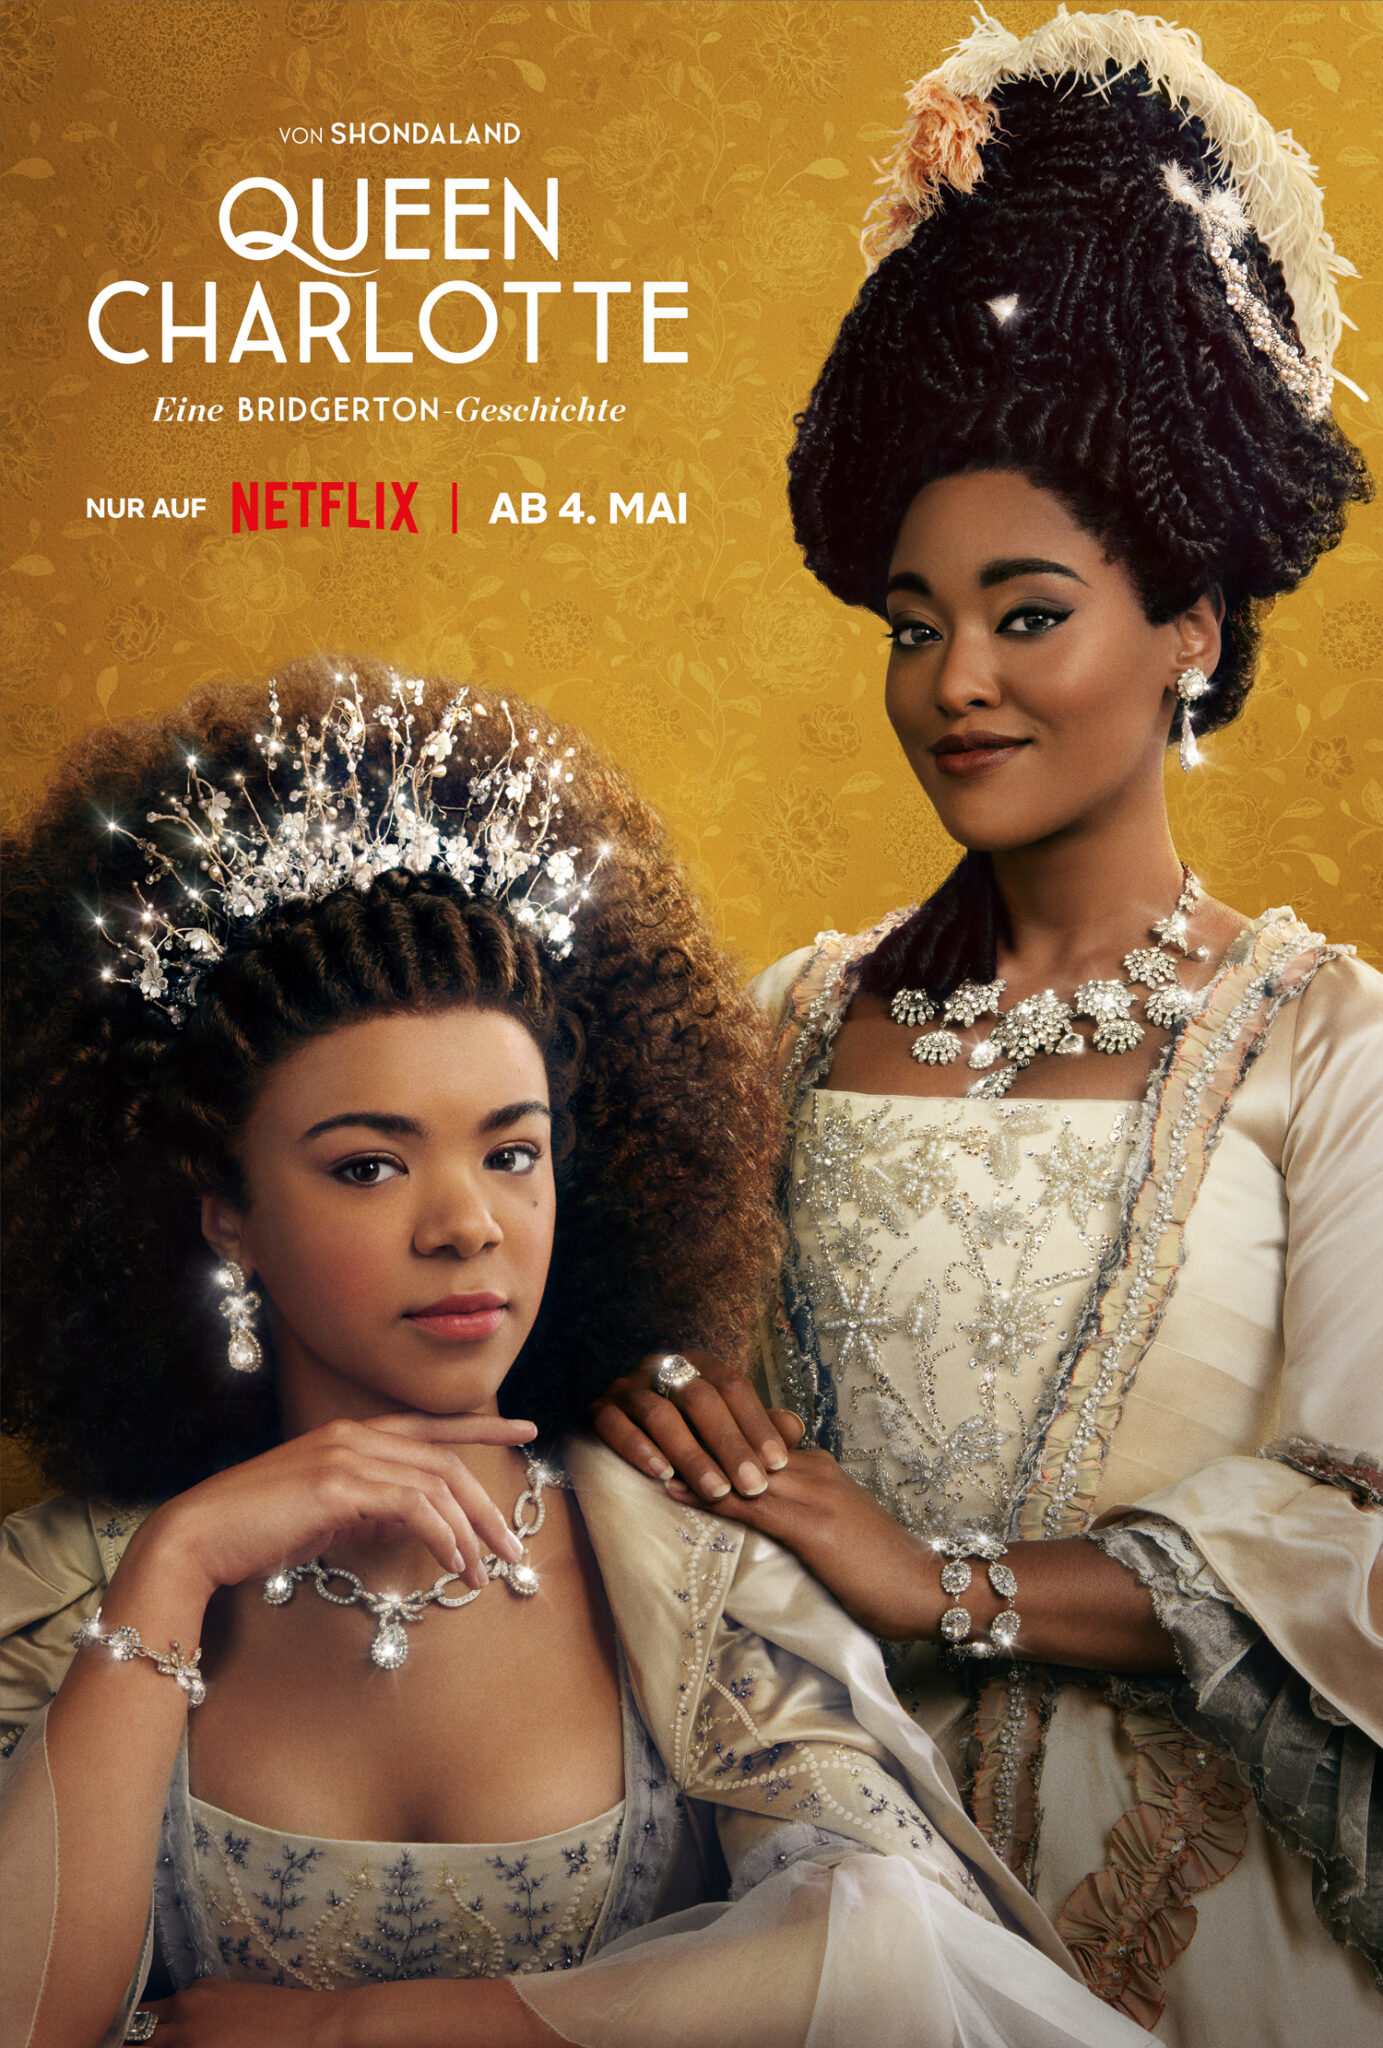 Das Plakat zeigt die junge Königin und ihre Freundin Lady Danbury. Queen Charlotte: Eine Bridgerton-Geschichte